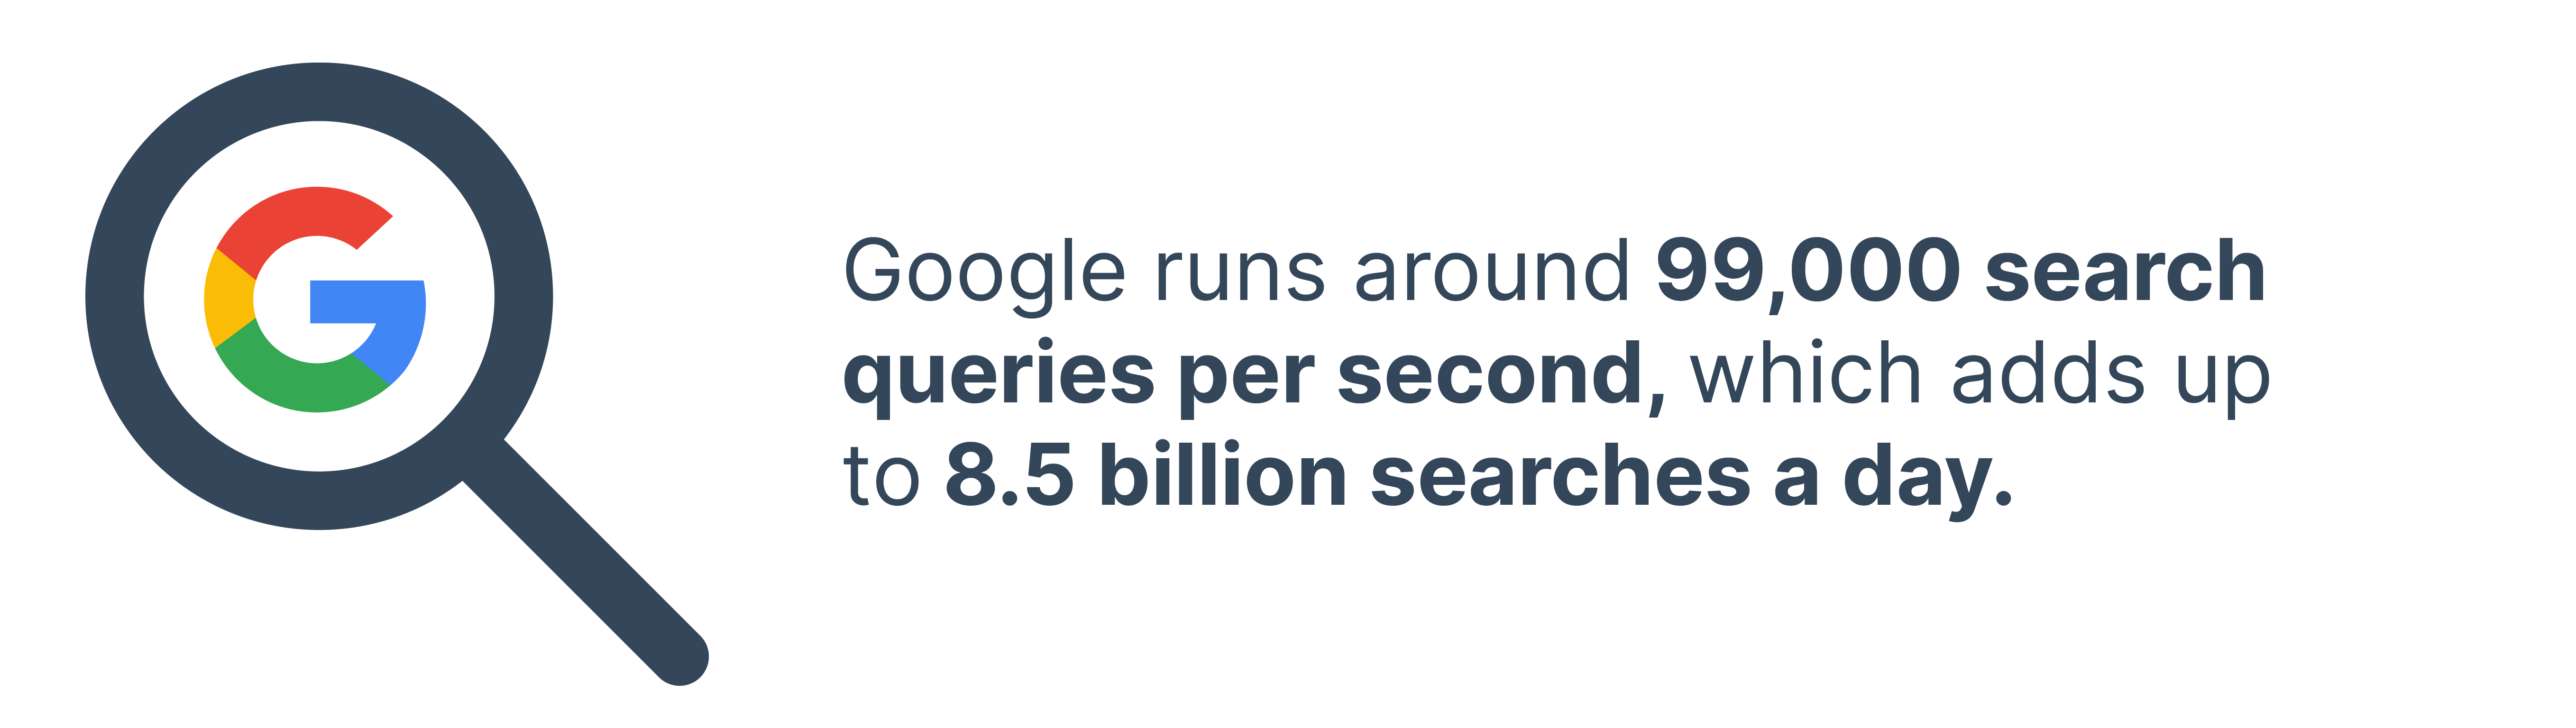 google runs 99000 searches per second